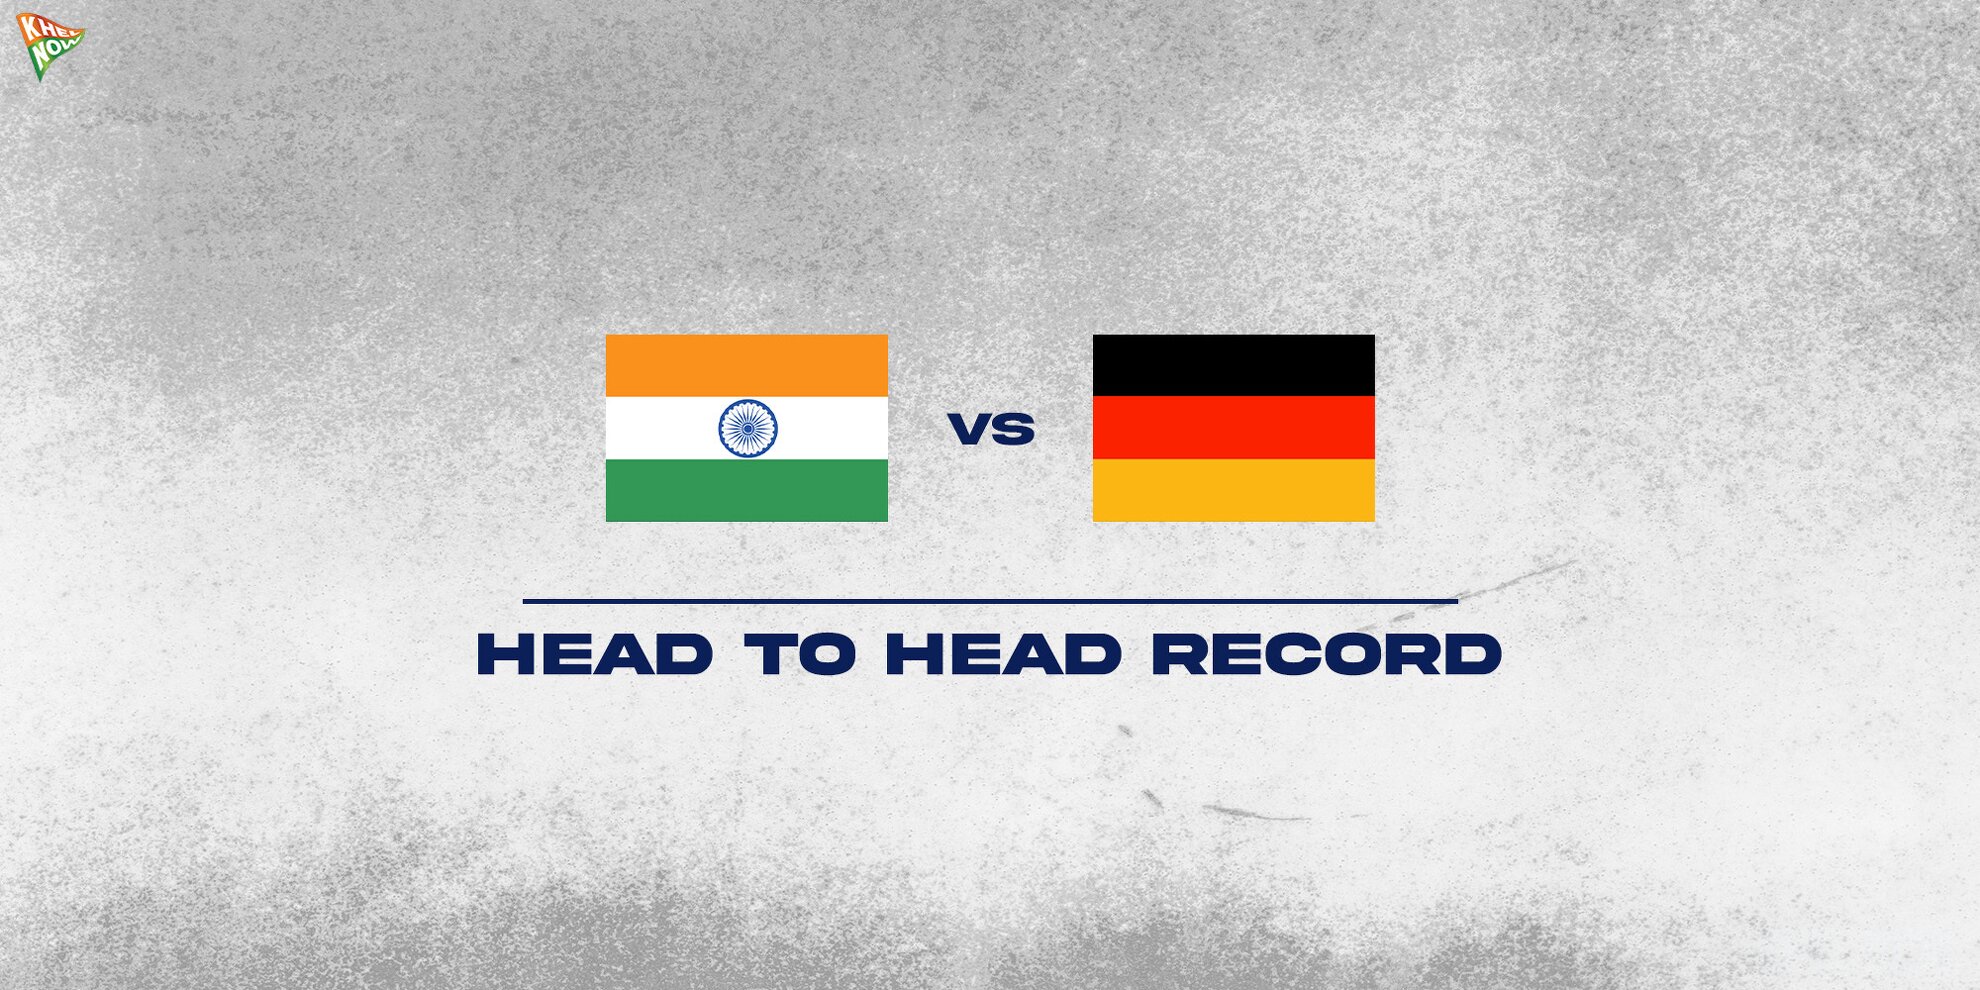 India vs Germany head to head Record